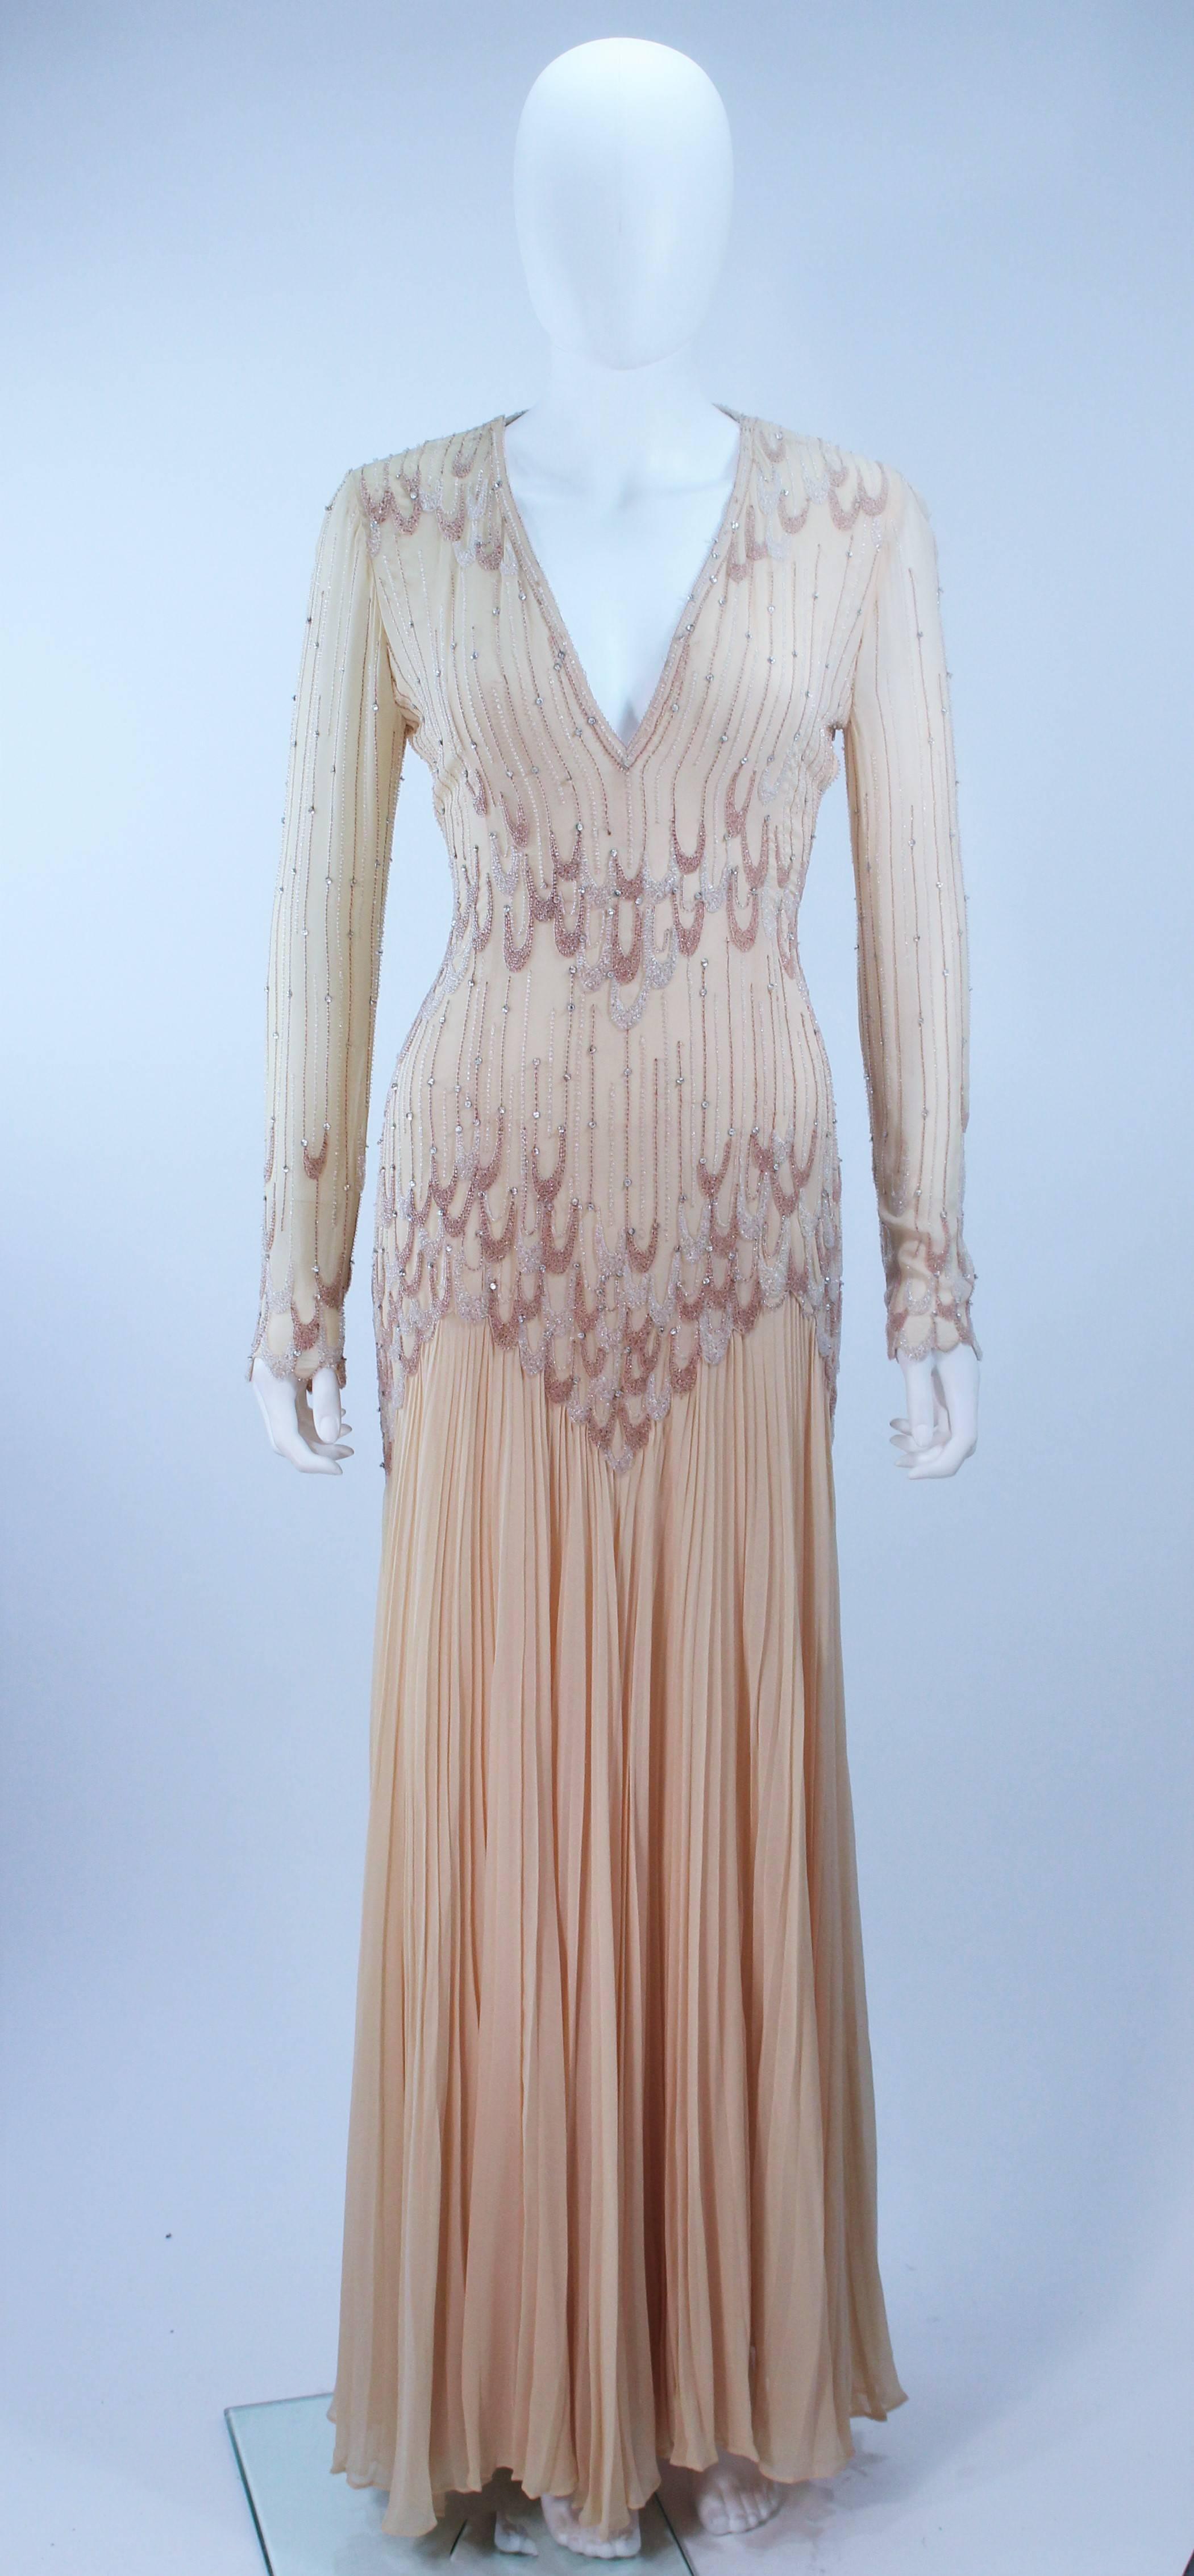 Dieses Balesto  das Kleid besteht aus perlenbesetztem Seidenchiffon in einem beigefarbenen Ton. Es gibt einen seitlichen Reißverschluss mit Haken- und Ösenverschlüssen an der Schulter. In ausgezeichnetem Vintage-Zustand.

  **Bitte vergleichen Sie